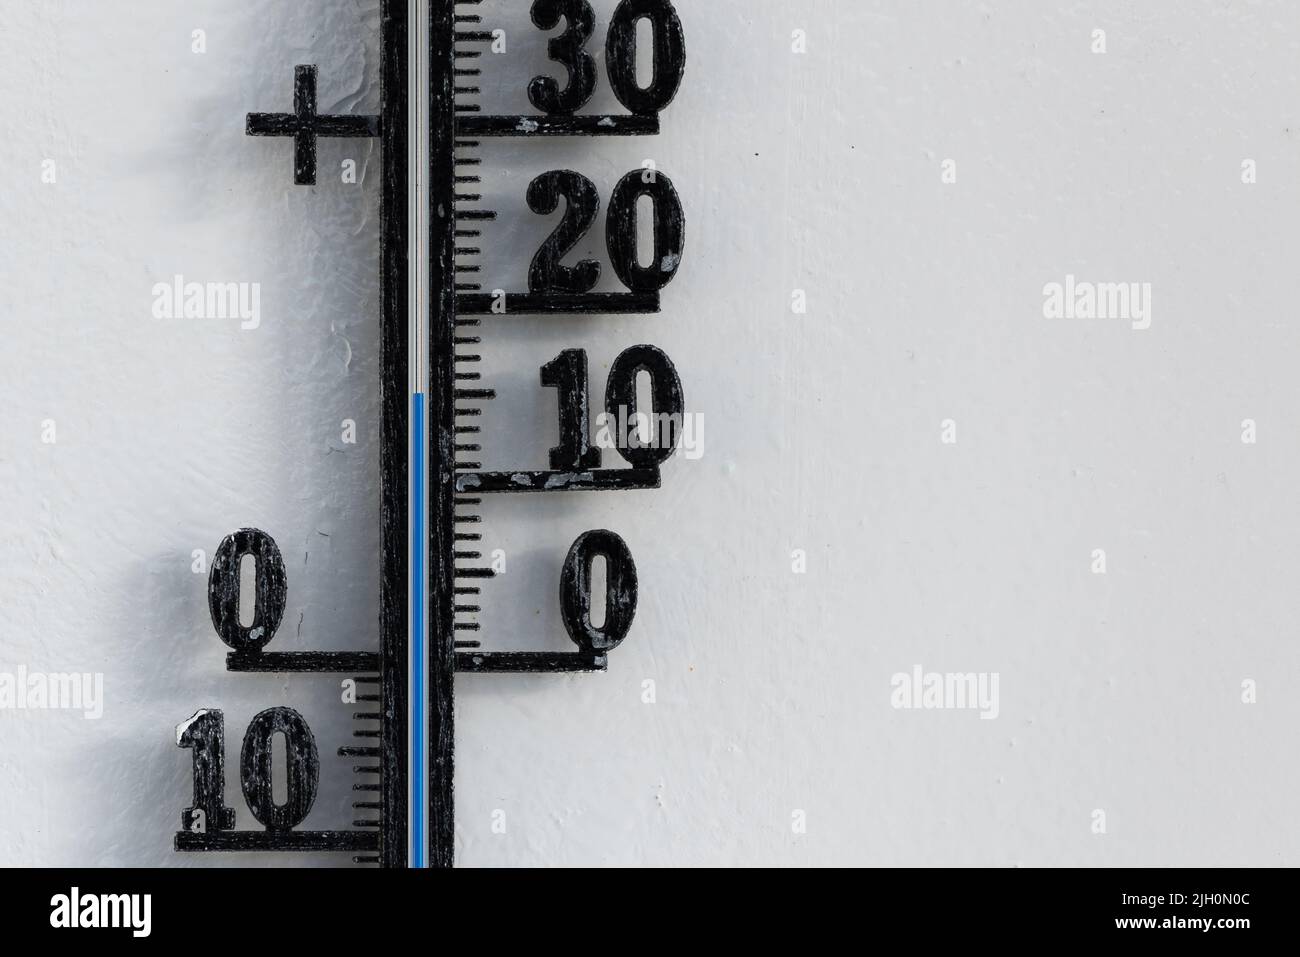 Termómetro analógico negro clásico colgado en una pared blanca que muestra una escala de temperatura azul de 15, quince grados centígrados Foto de stock